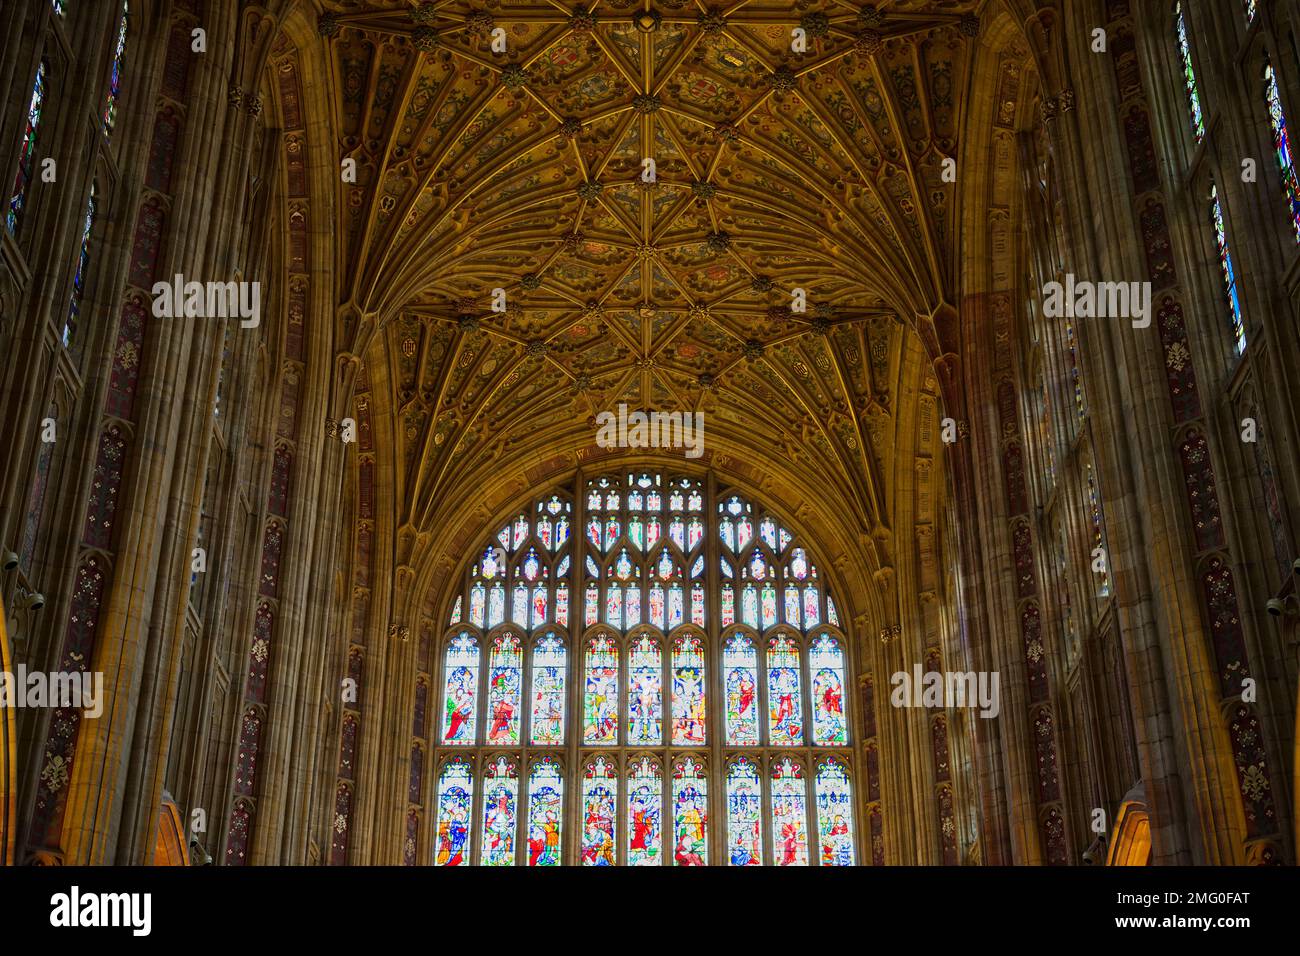 Sherborne Abbey ist ein Fan mit Gewölbedecke im Inneren des Schiffes/Kanzels. Stockfoto